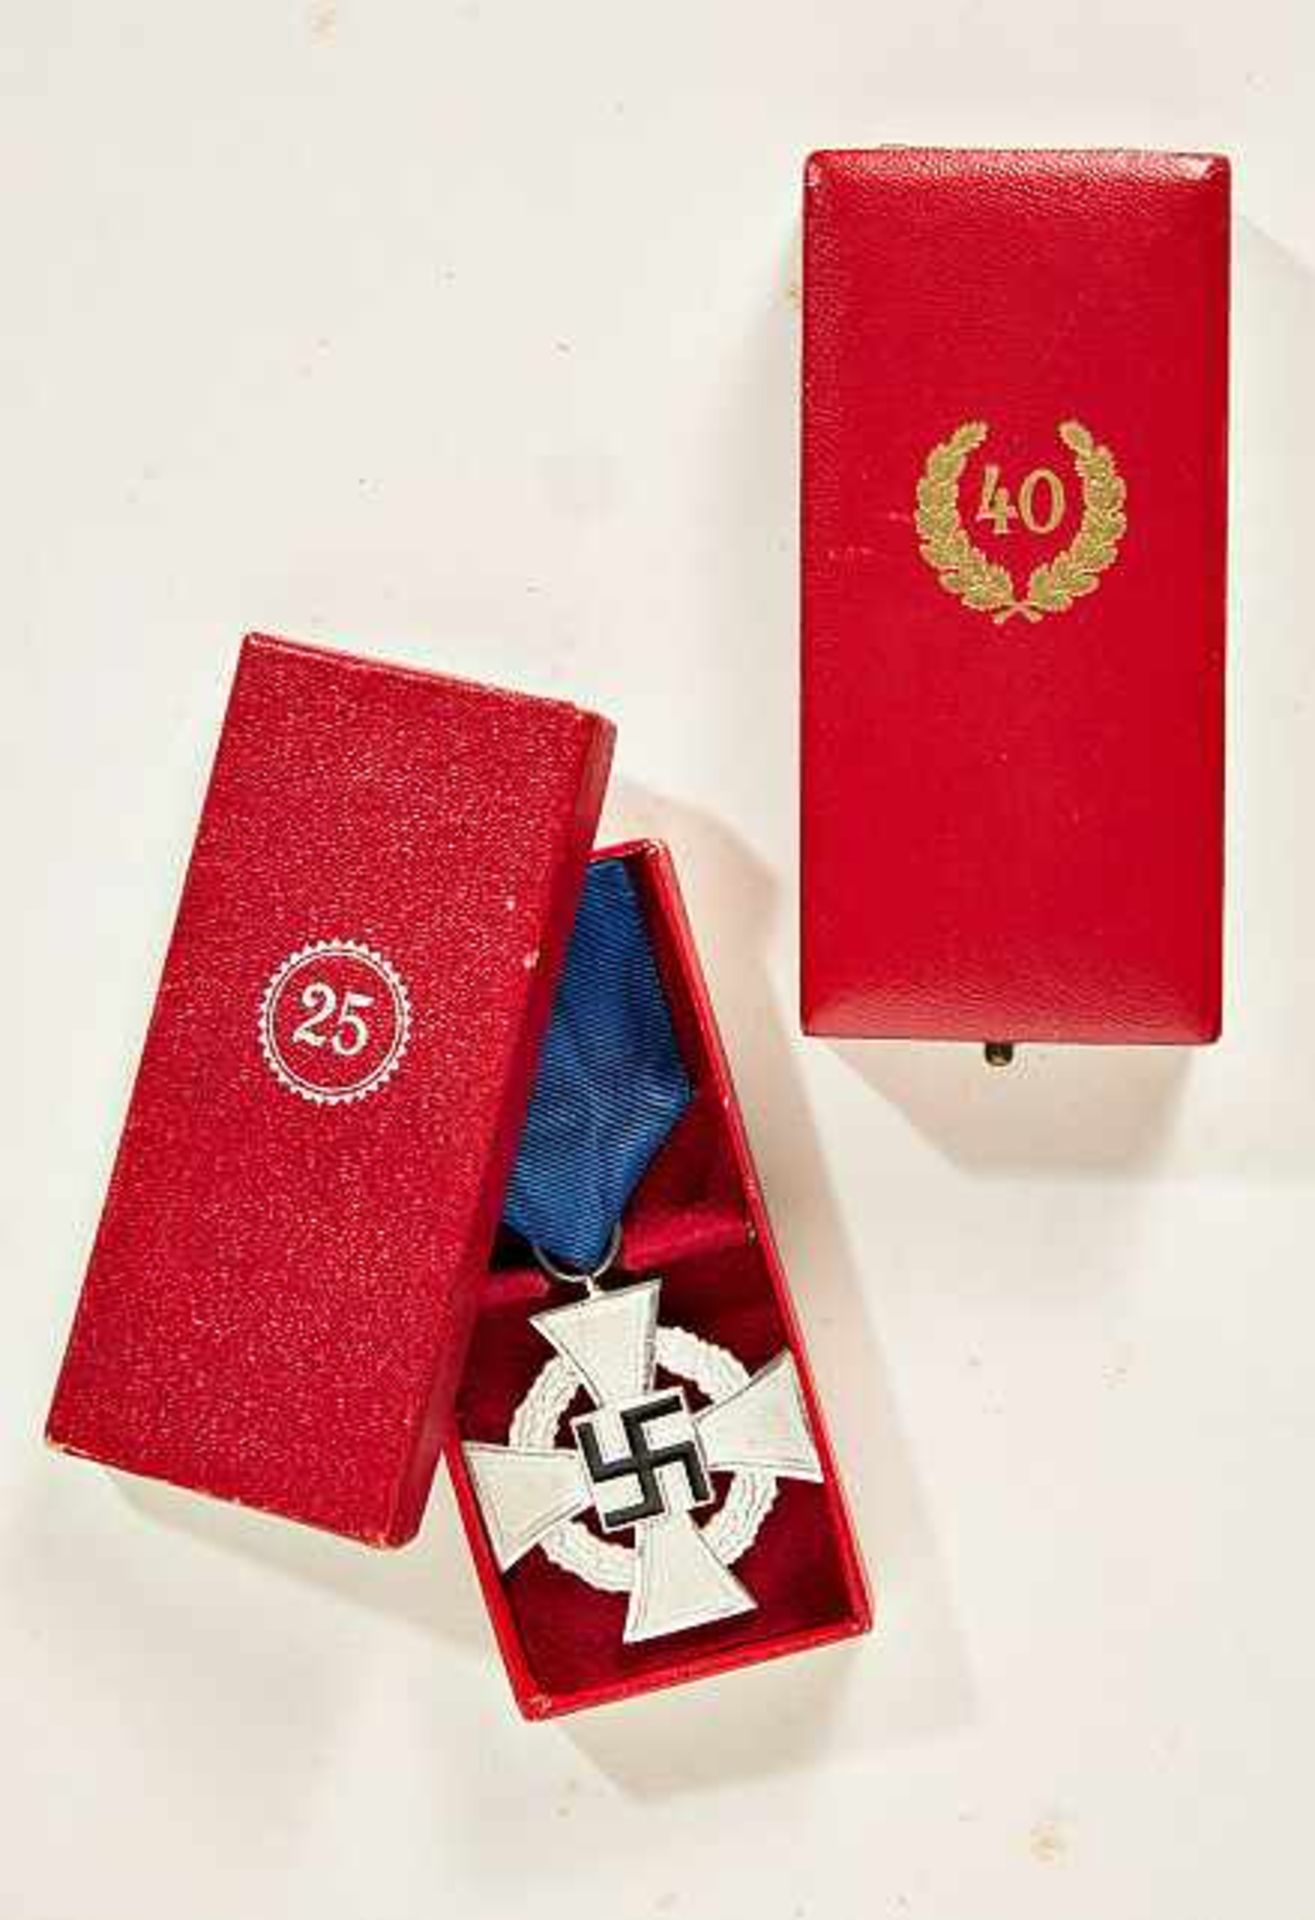 Deutsches Reich 1933 - 1945 - General Awards - Zivile Orden und Auszeichnungen : 40 Year Loyal